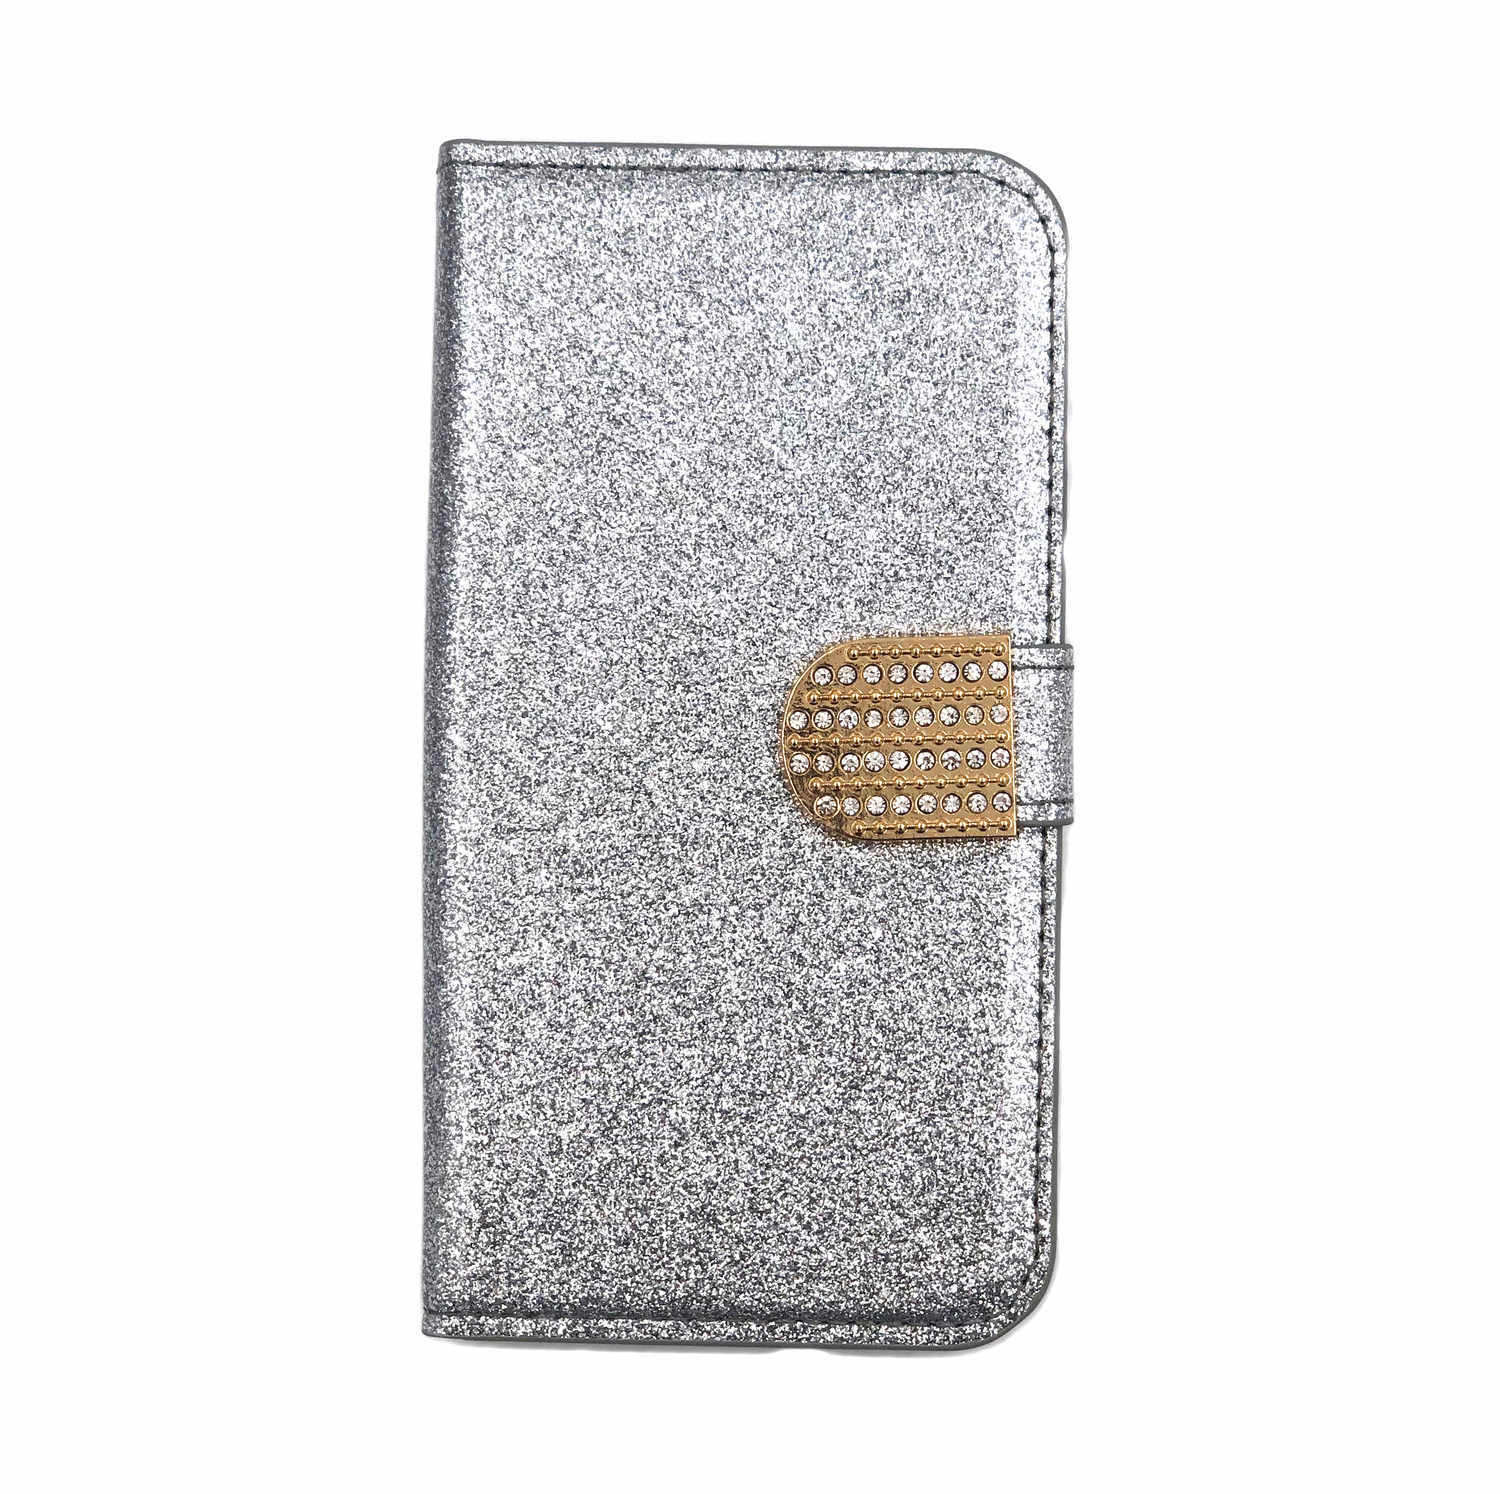 Glitter design Plånboksfodral till iPhone 5/5S/SE - Silver - Skal och Fodral  - Elgiganten